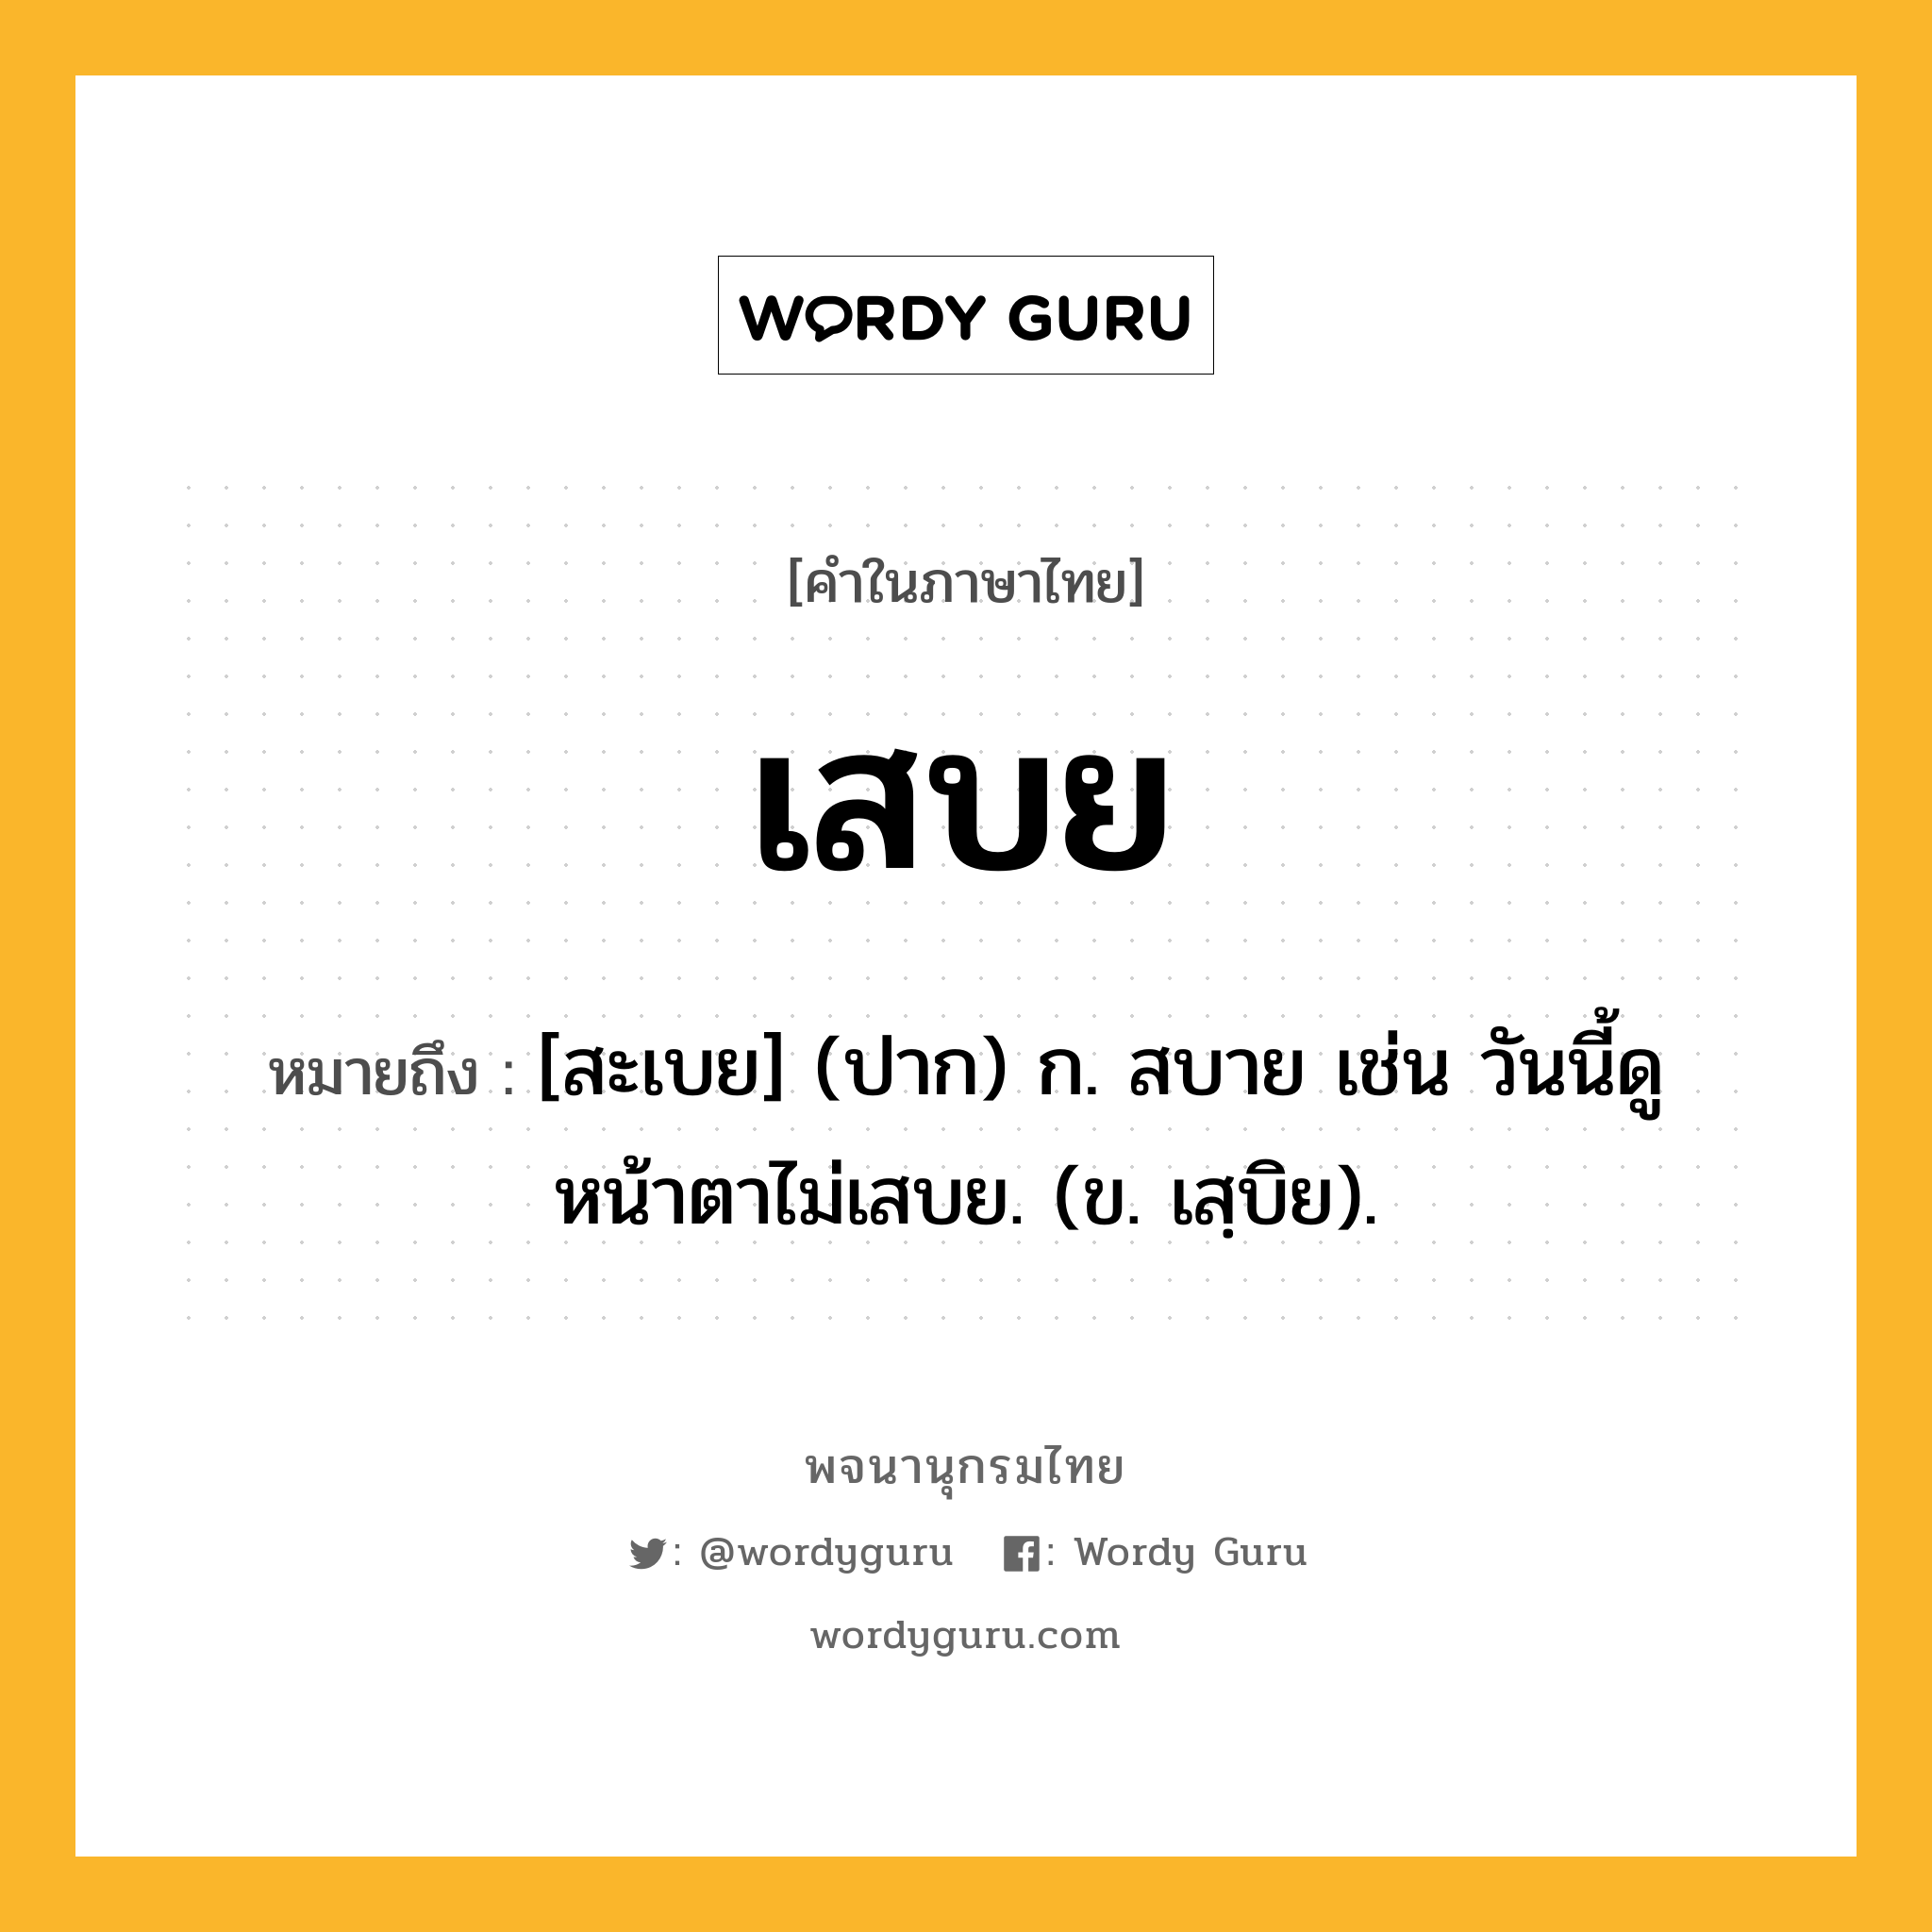 เสบย ความหมาย หมายถึงอะไร?, คำในภาษาไทย เสบย หมายถึง [สะเบย] (ปาก) ก. สบาย เช่น วันนี้ดูหน้าตาไม่เสบย. (ข. เสฺบิย).